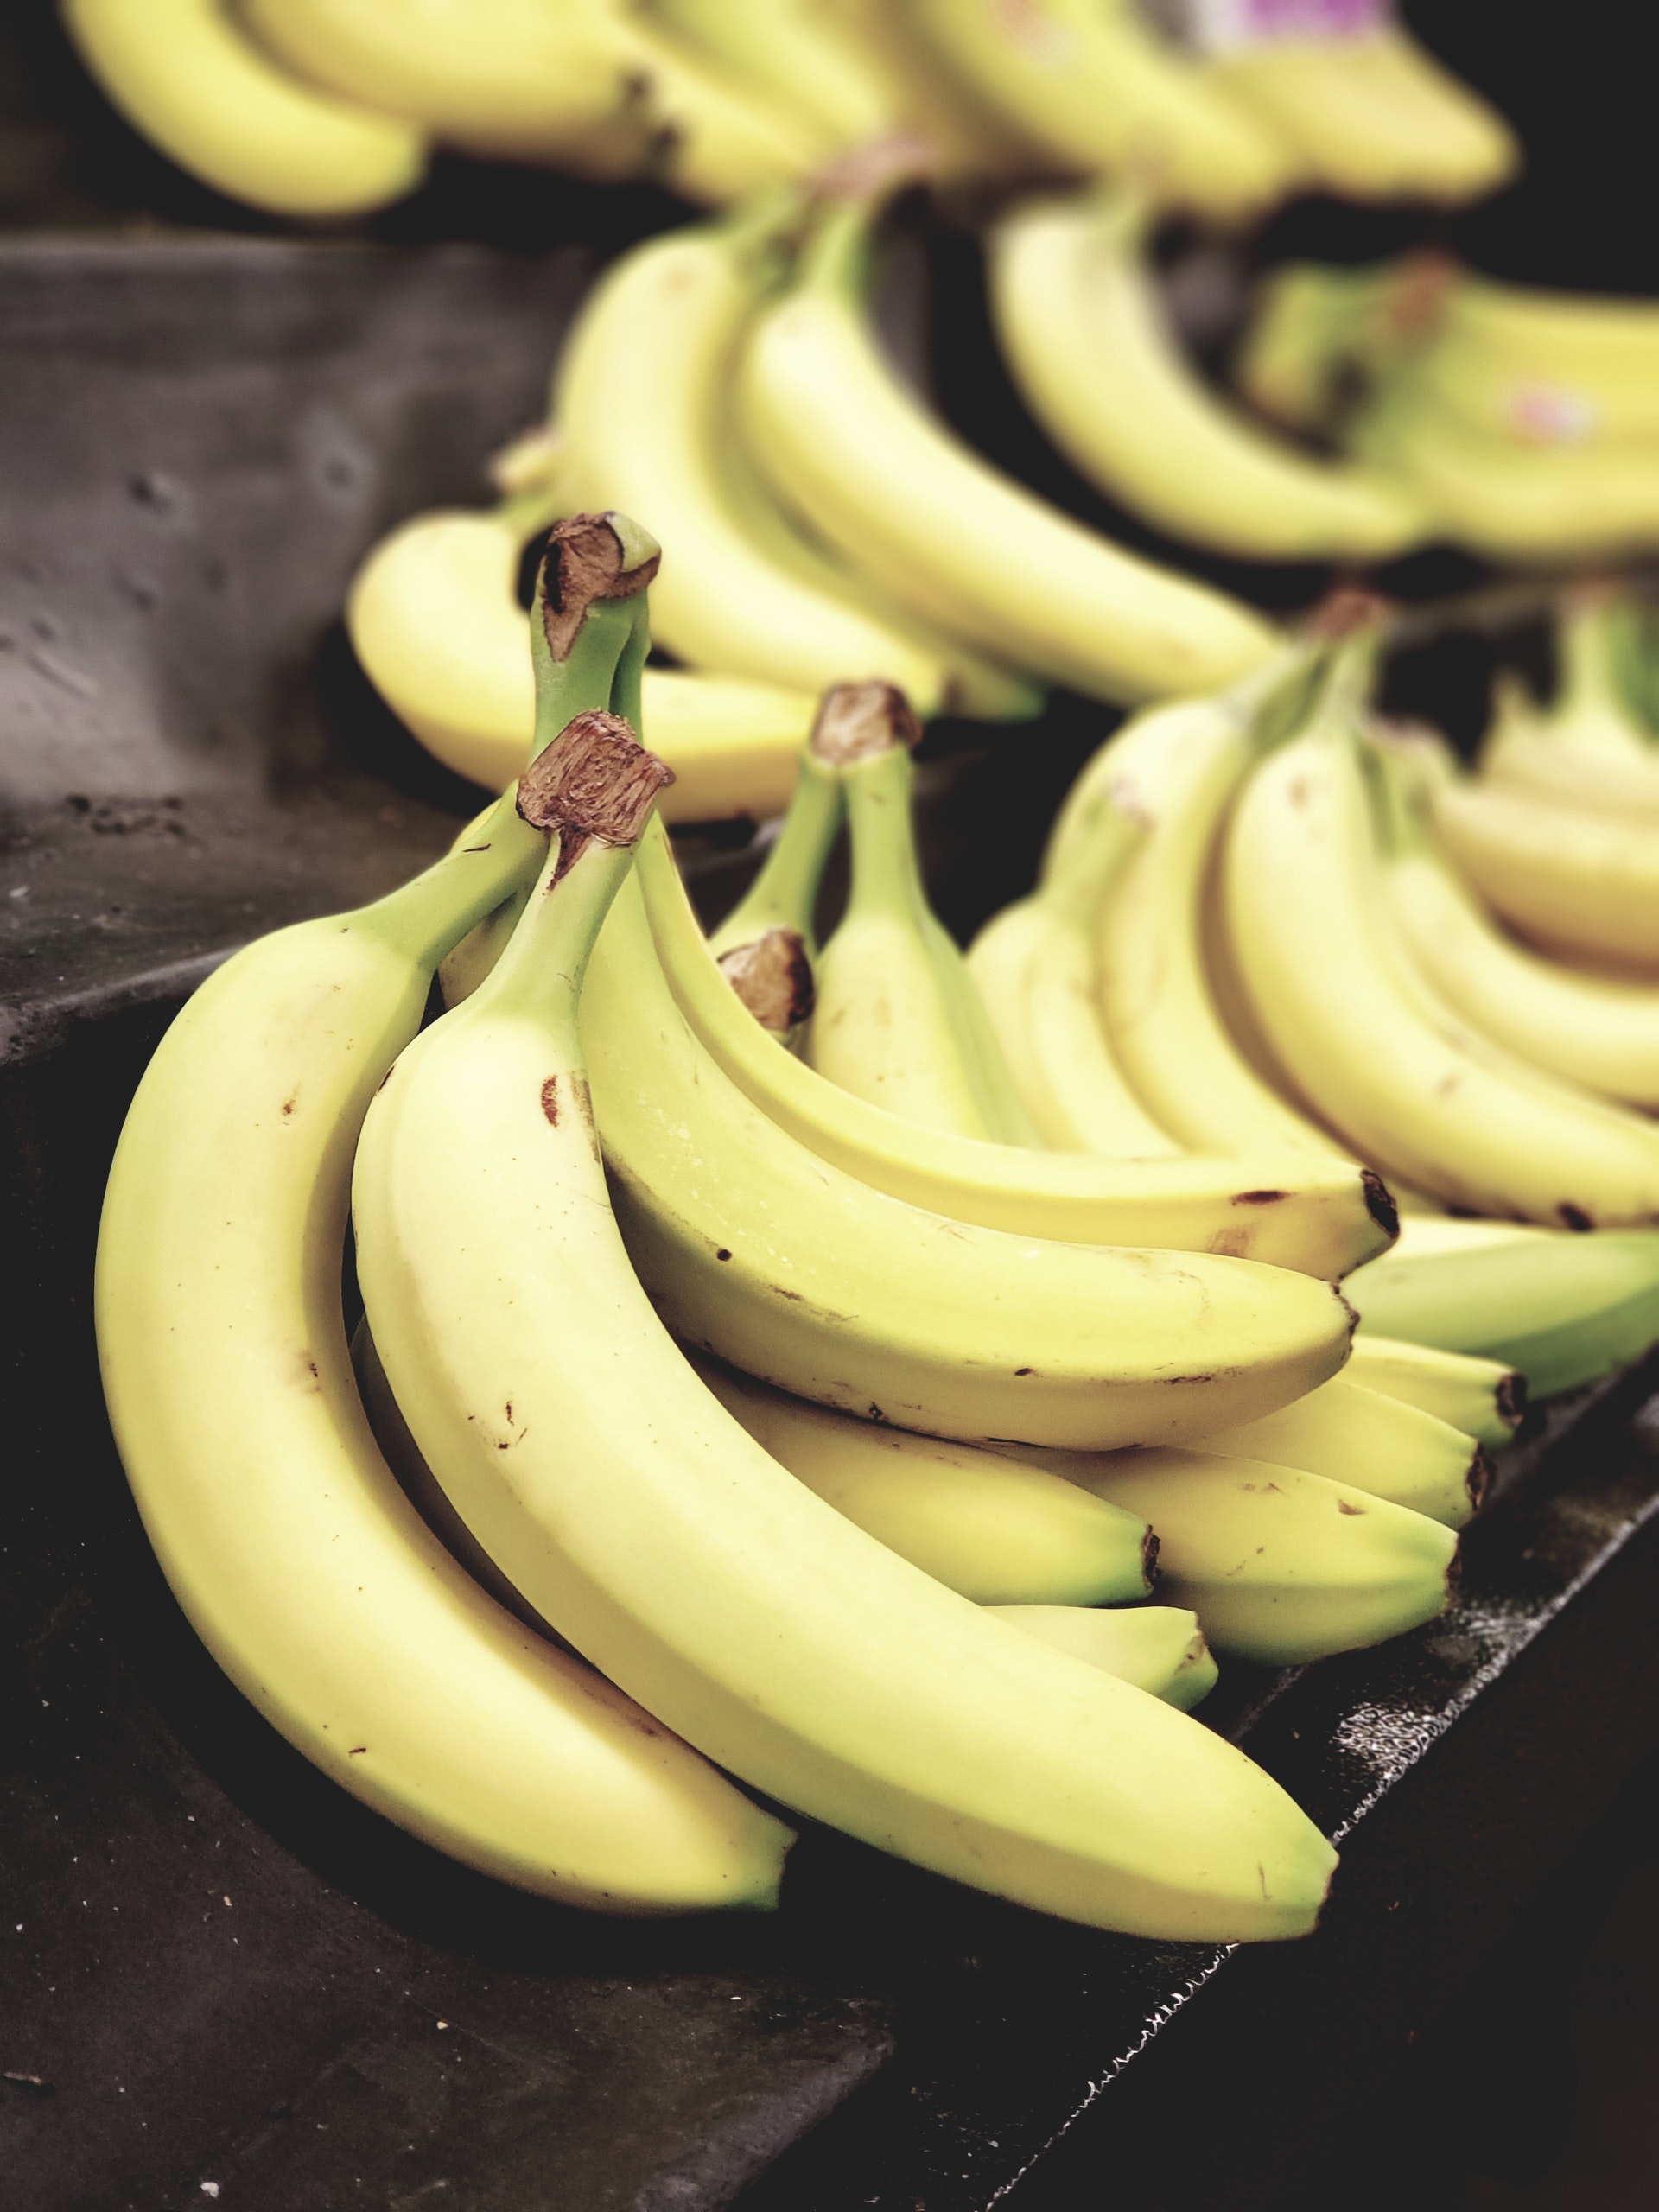 Imagén 2 cultivo banano Microfertisa